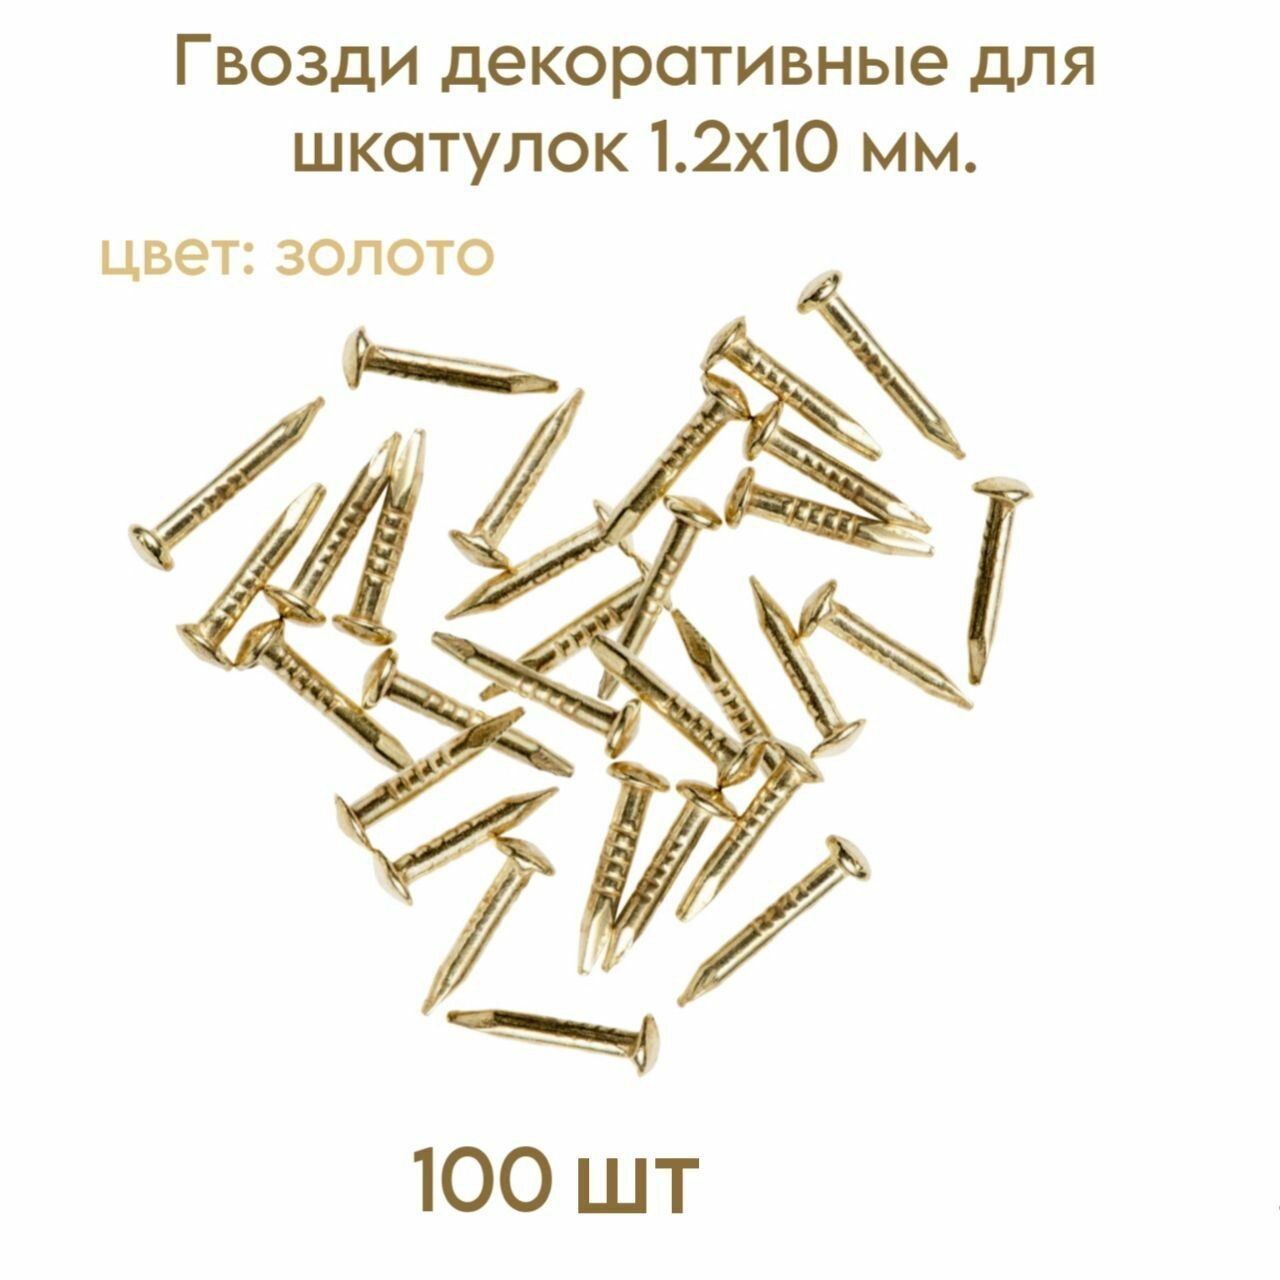 Гвозди декоративные для шкатулок цвет золото 1.2х10 мм. (100 шт.)